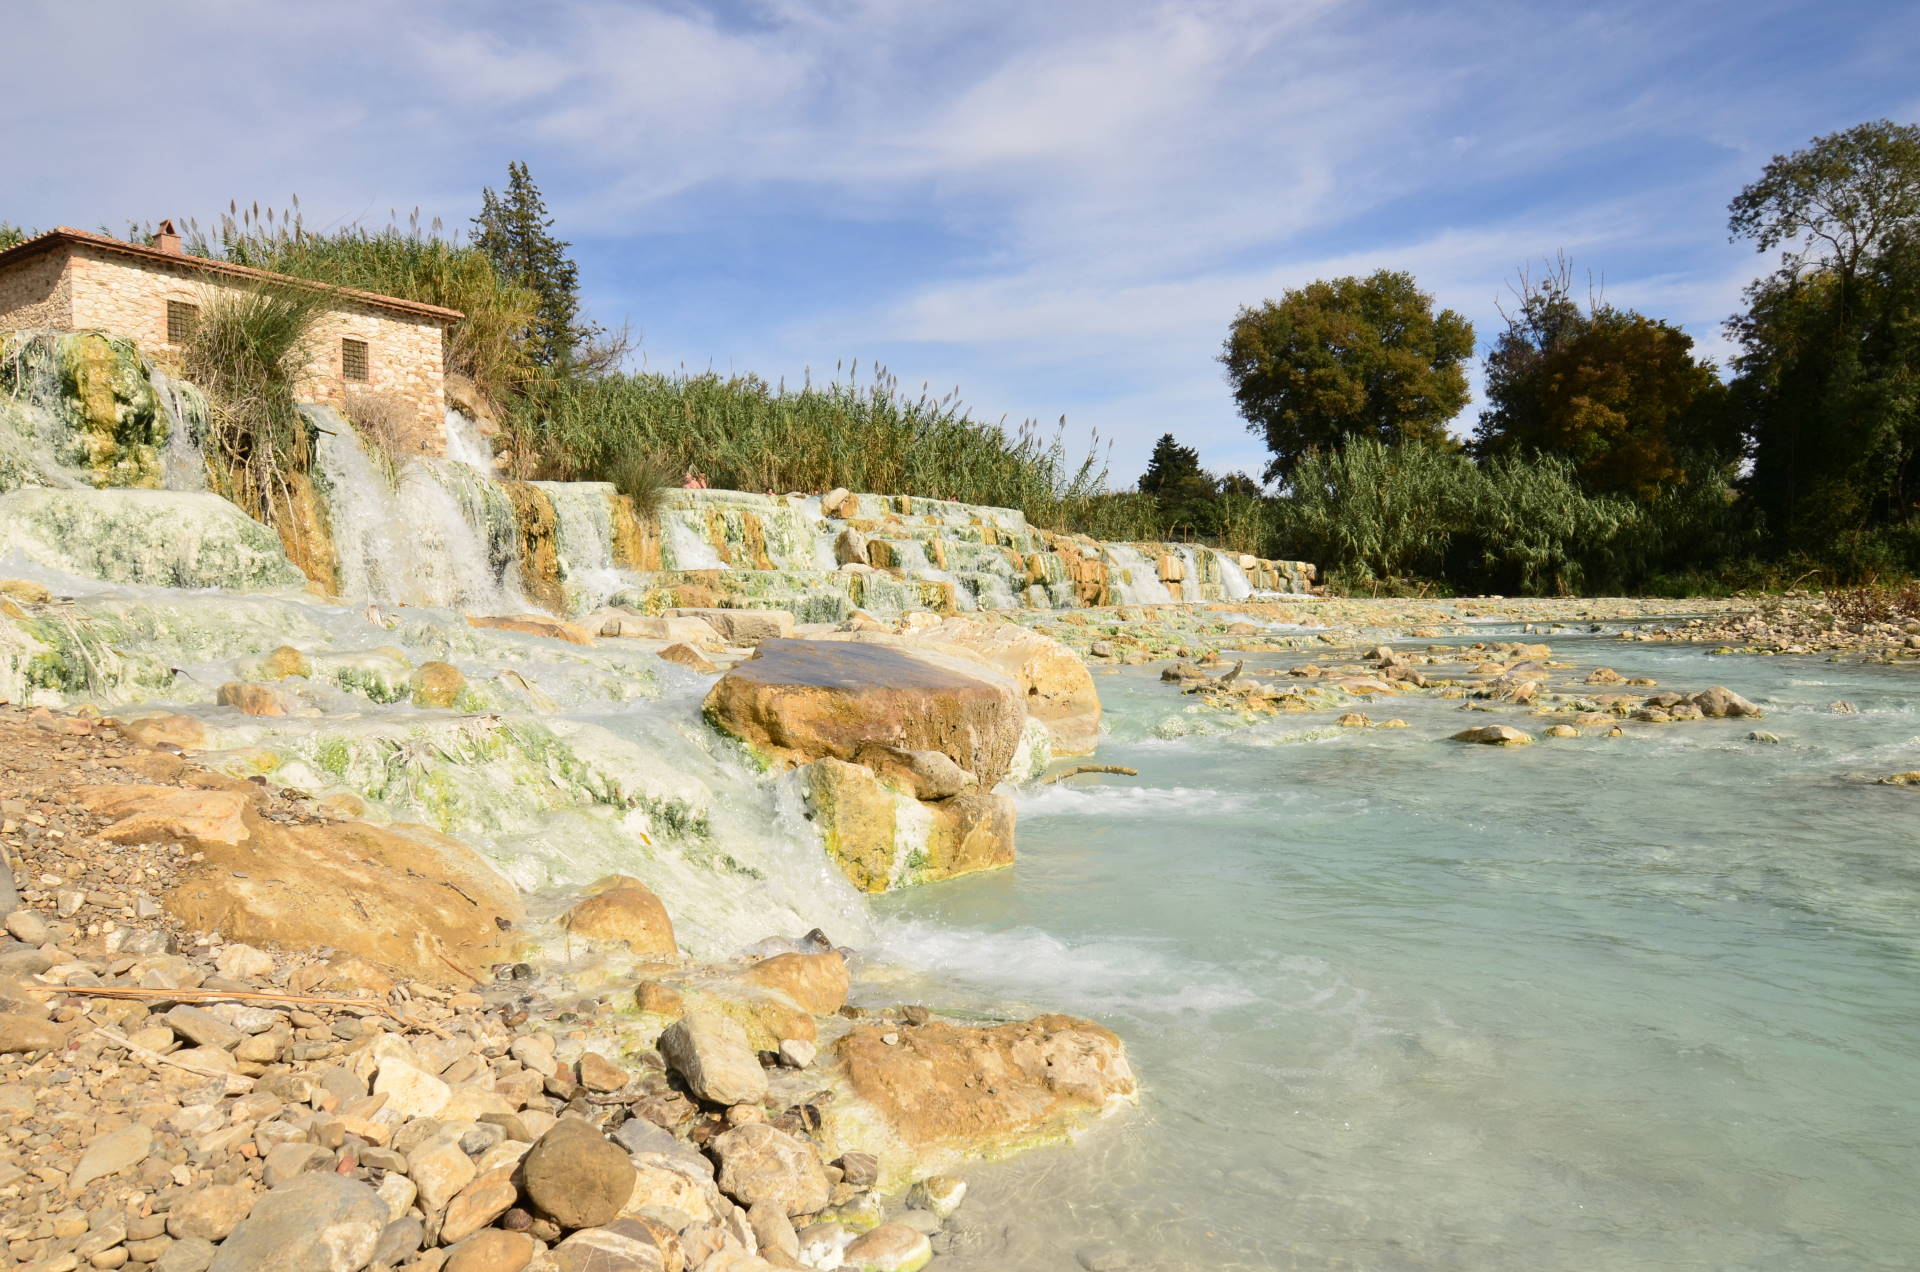 Waterfalls and hot springs at Saturnia thermal baths.